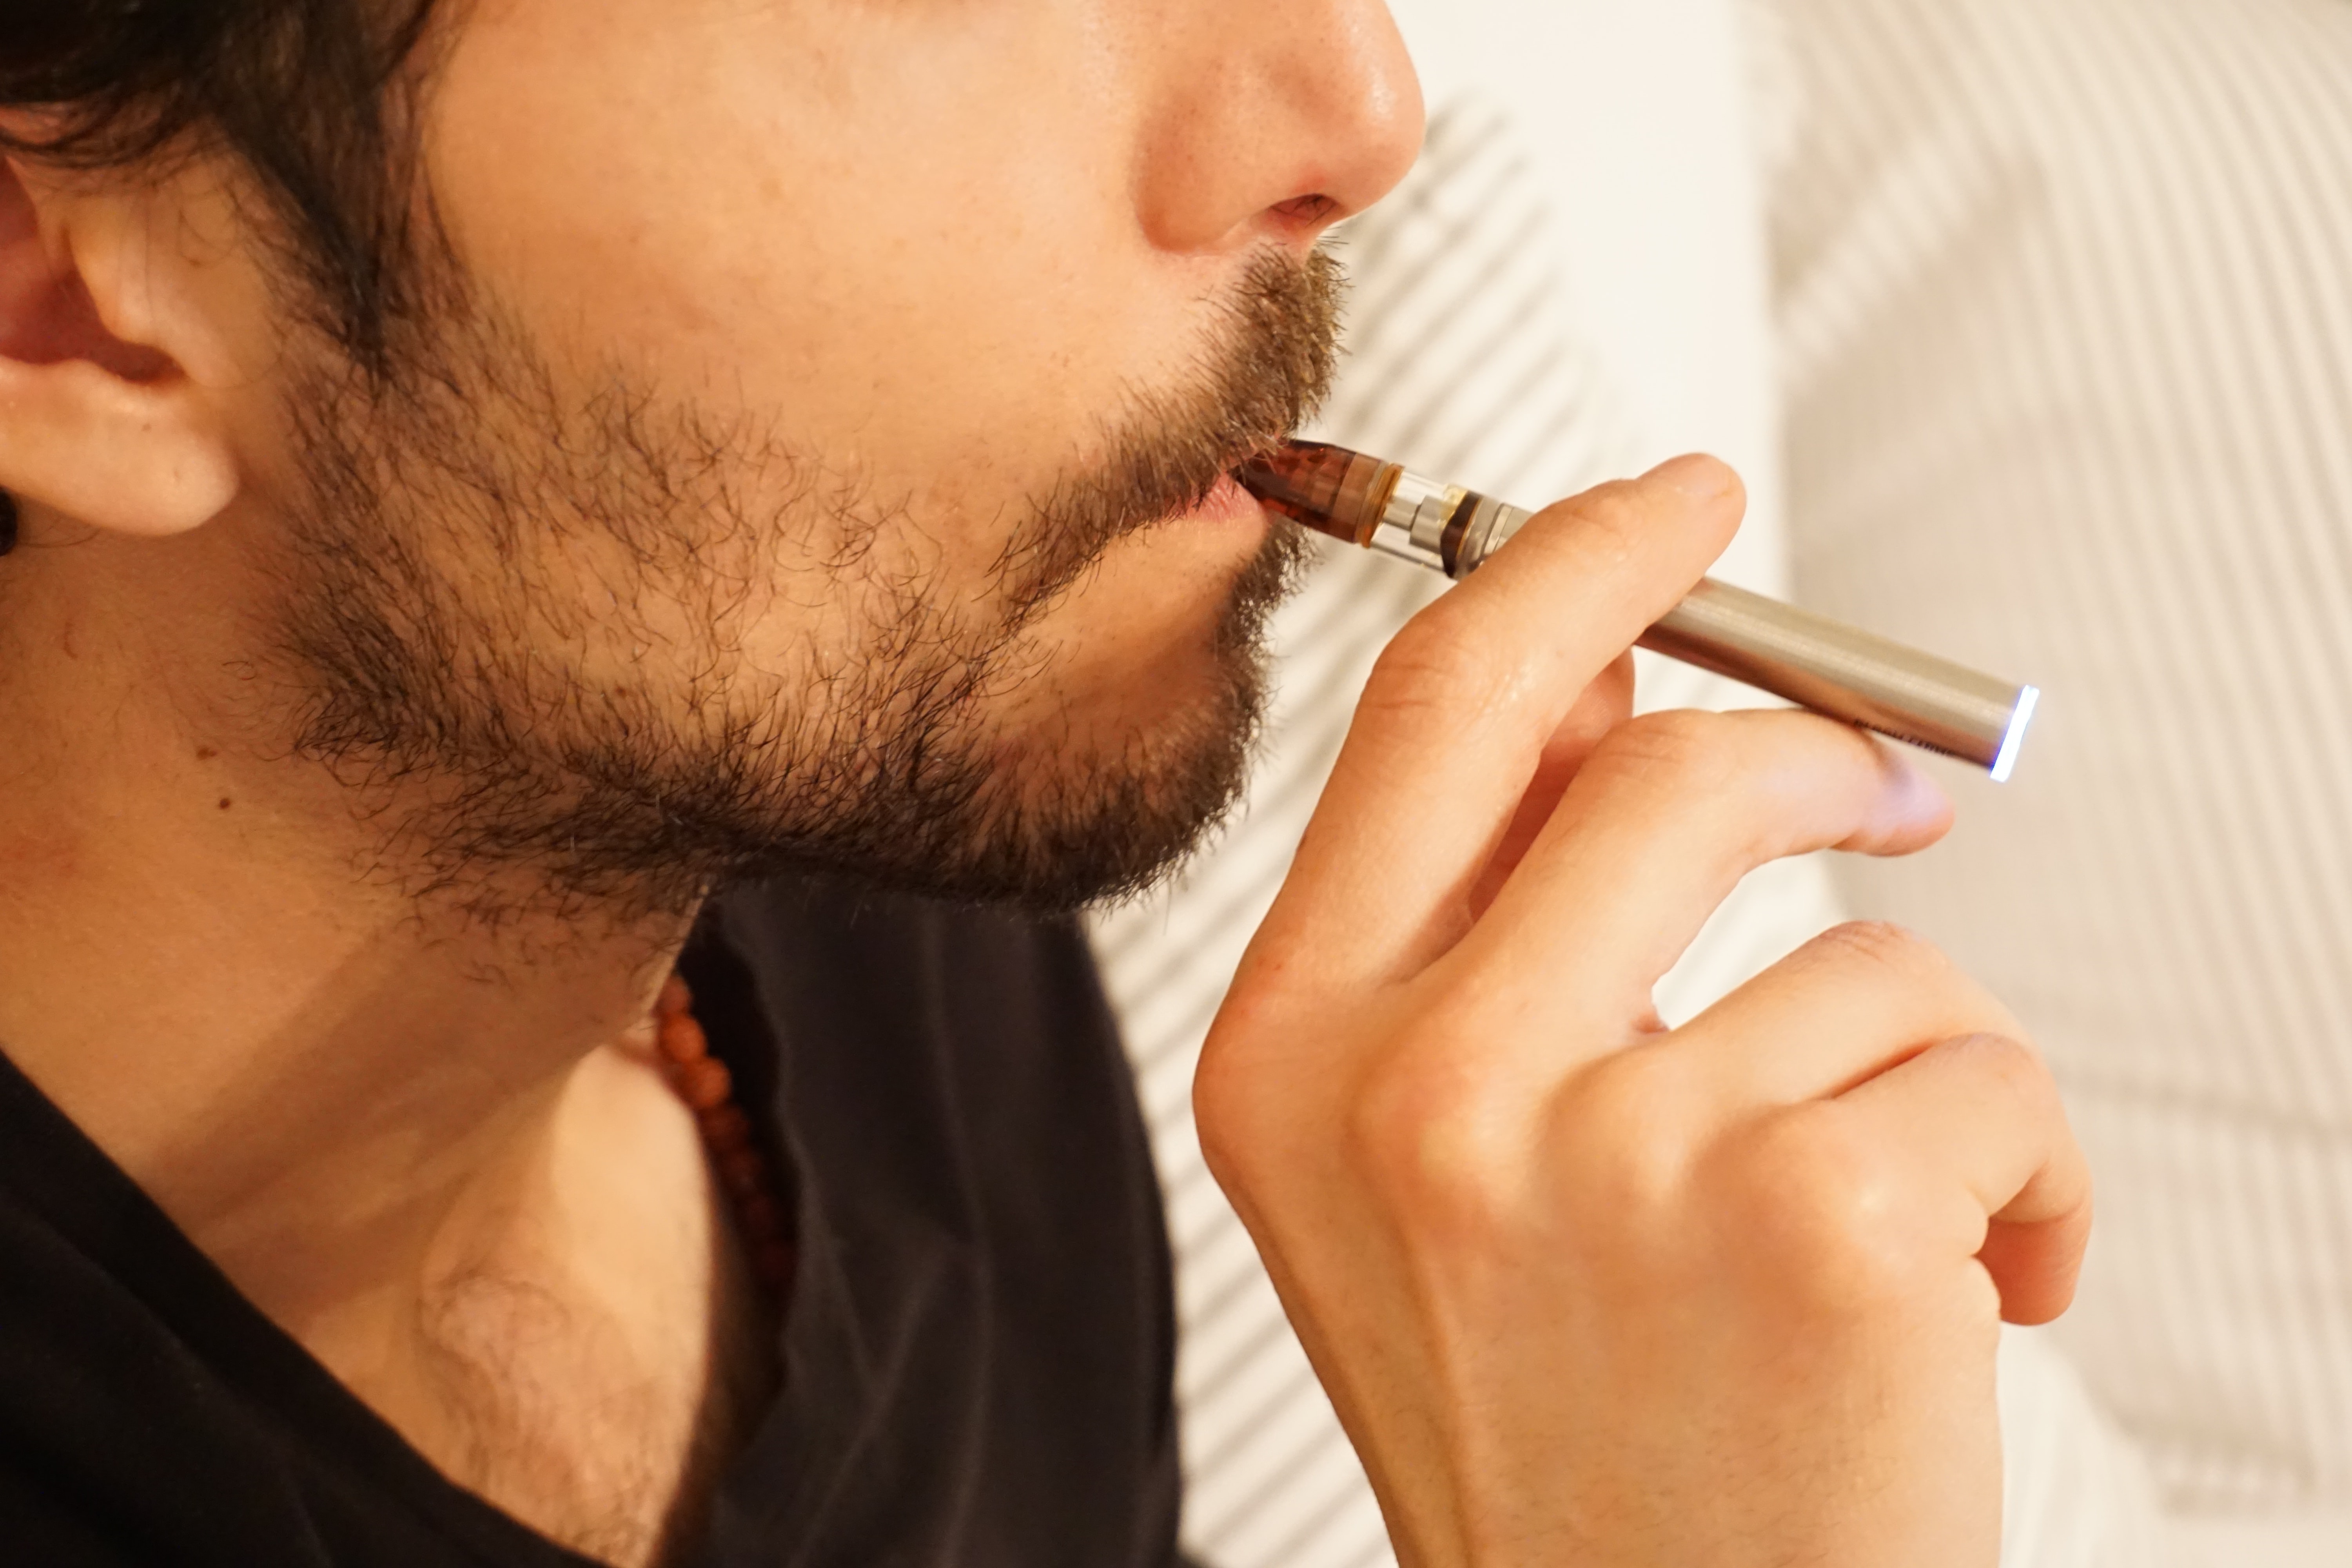 Which is more harmful, e-cigarette or cigarette?